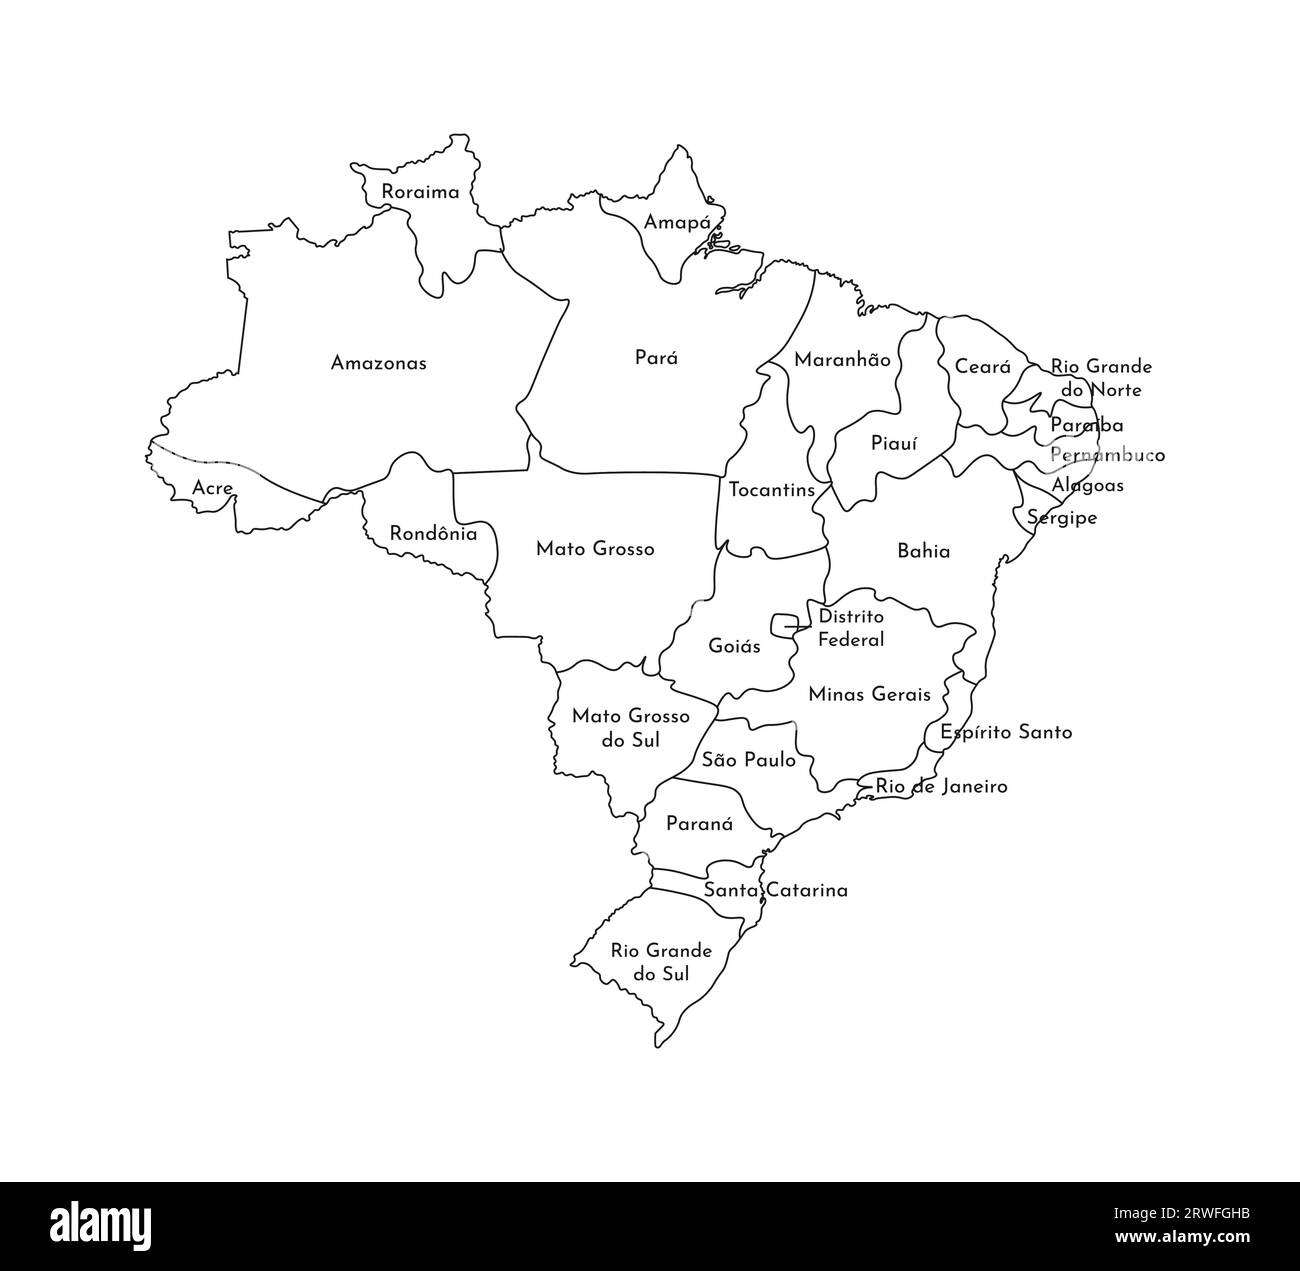 Illustrazione vettoriale isolata della mappa amministrativa semplificata del Brasile. Confini e nomi delle regioni. Silhouette nere. Illustrazione Vettoriale